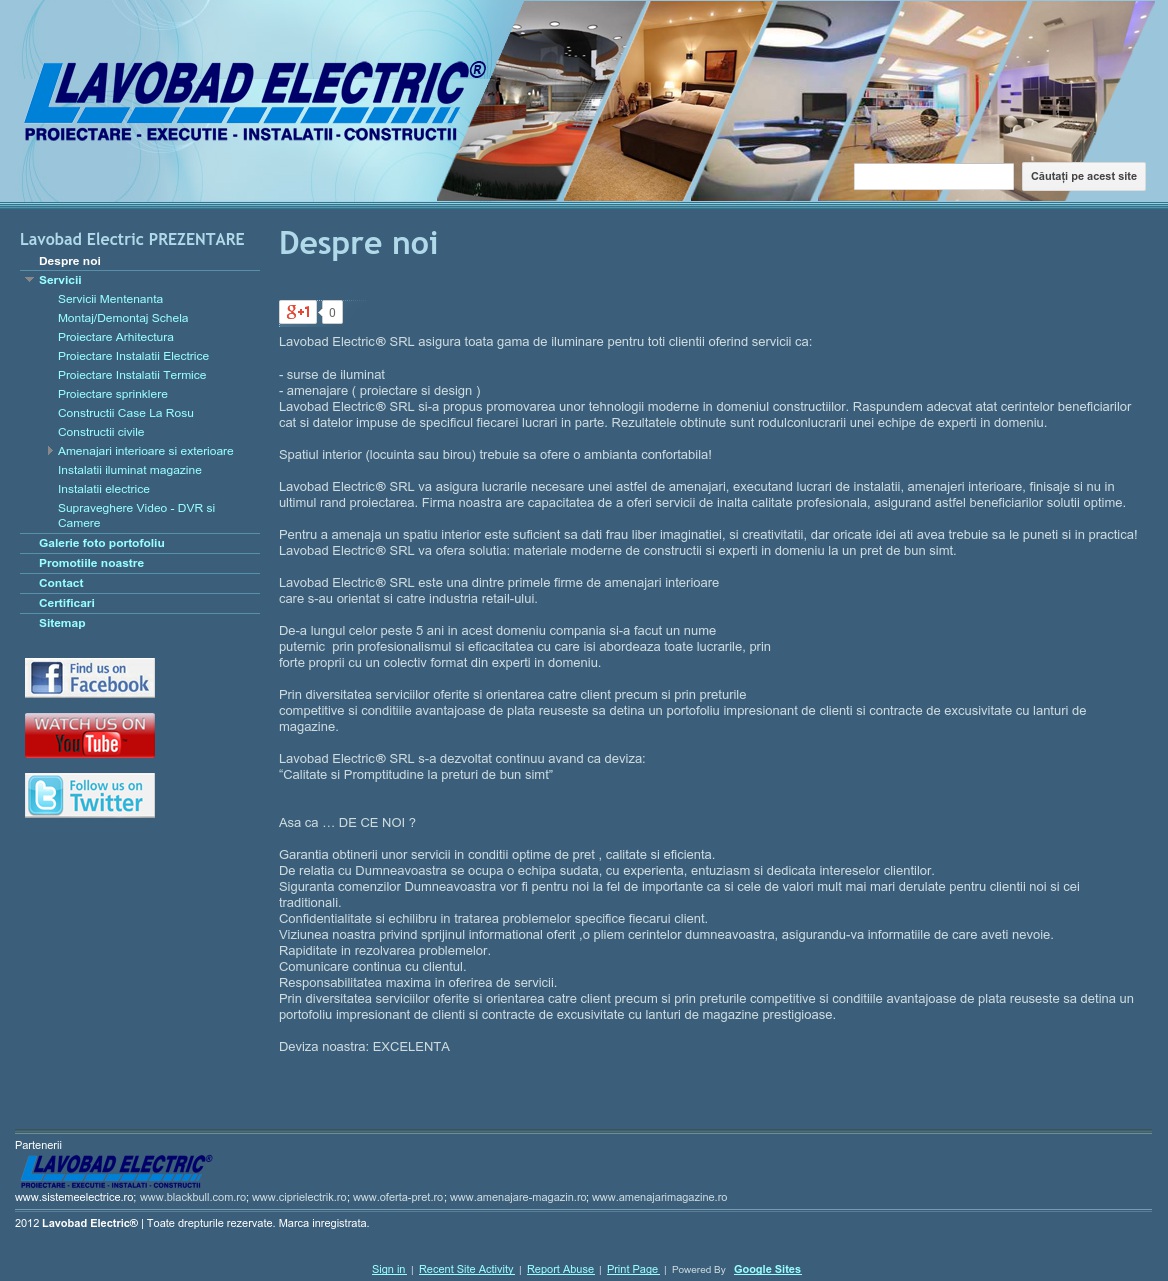 Lavobad Electric